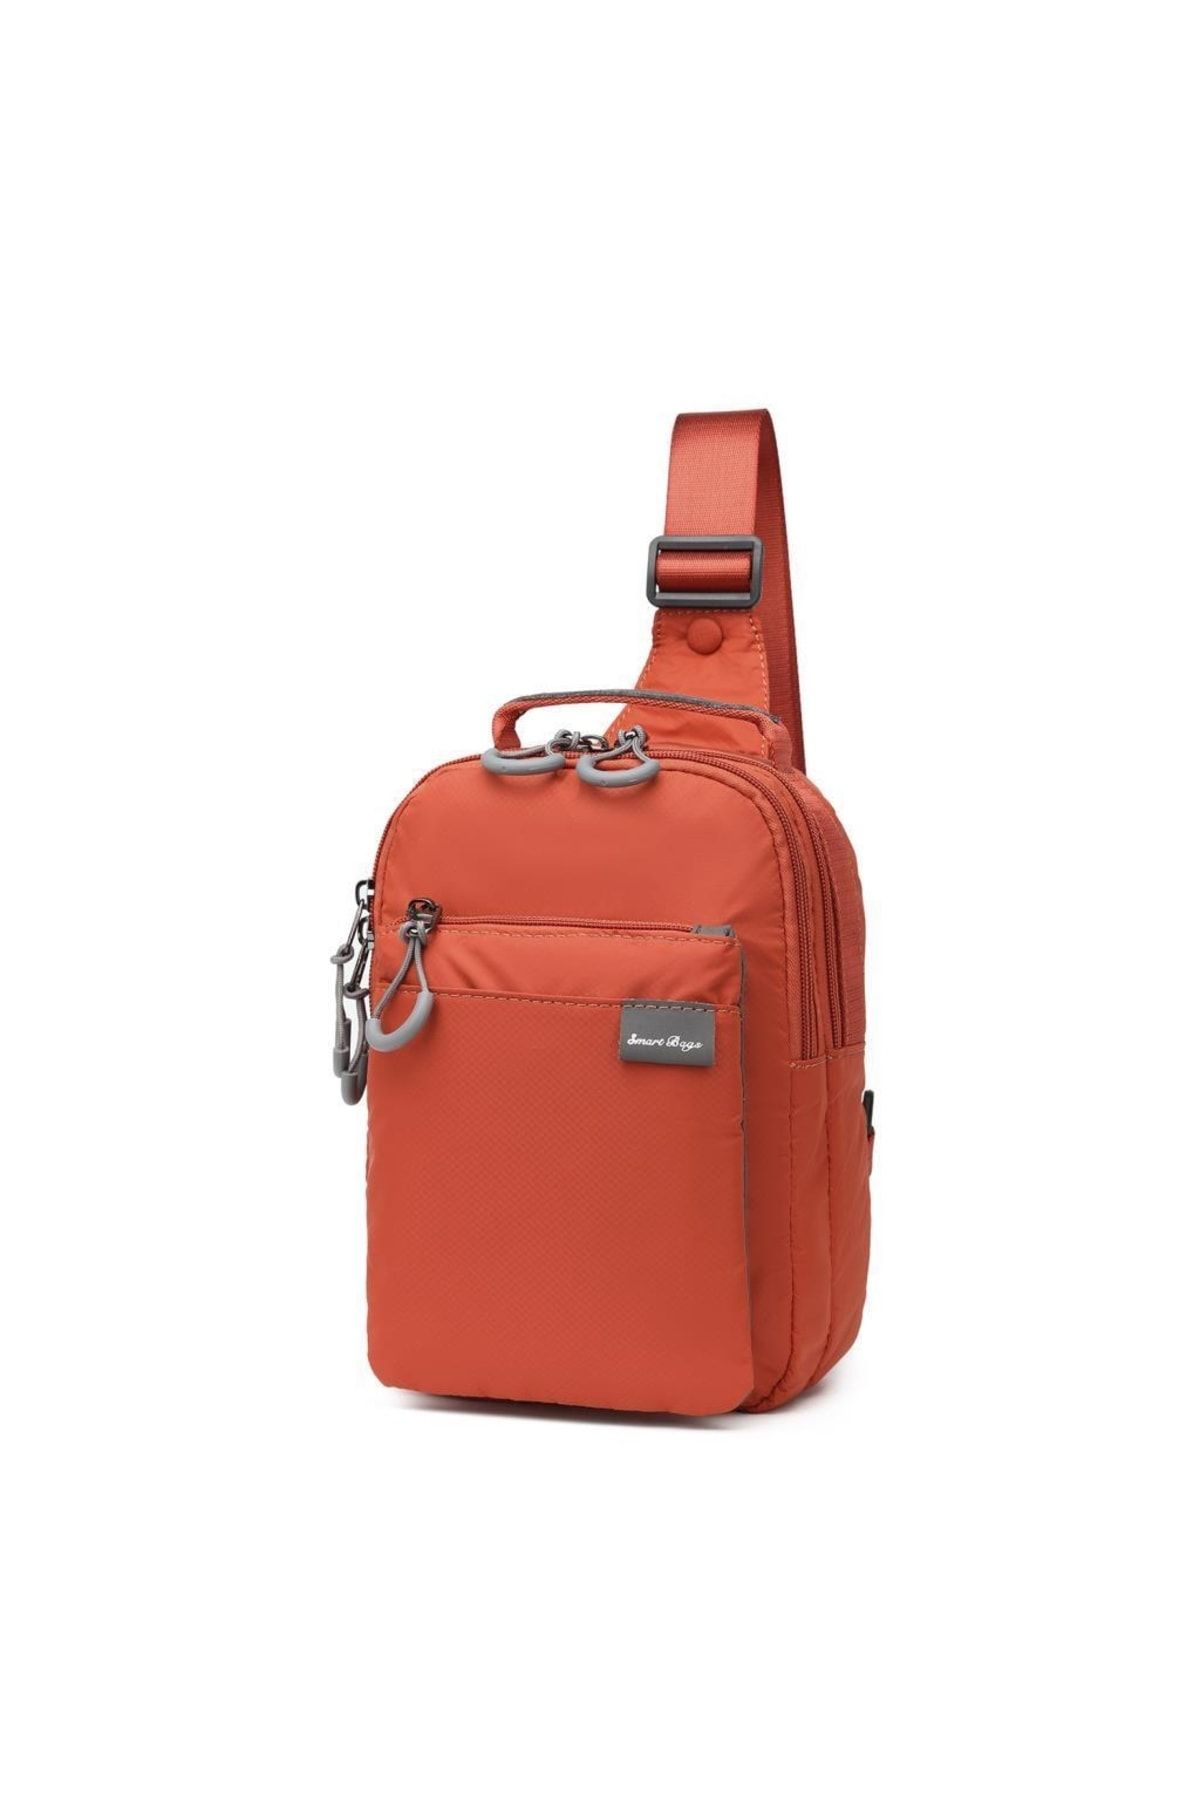 Smart Bags Ekstra Hafif Uniseks Bodybag Postacı Çantası 3151